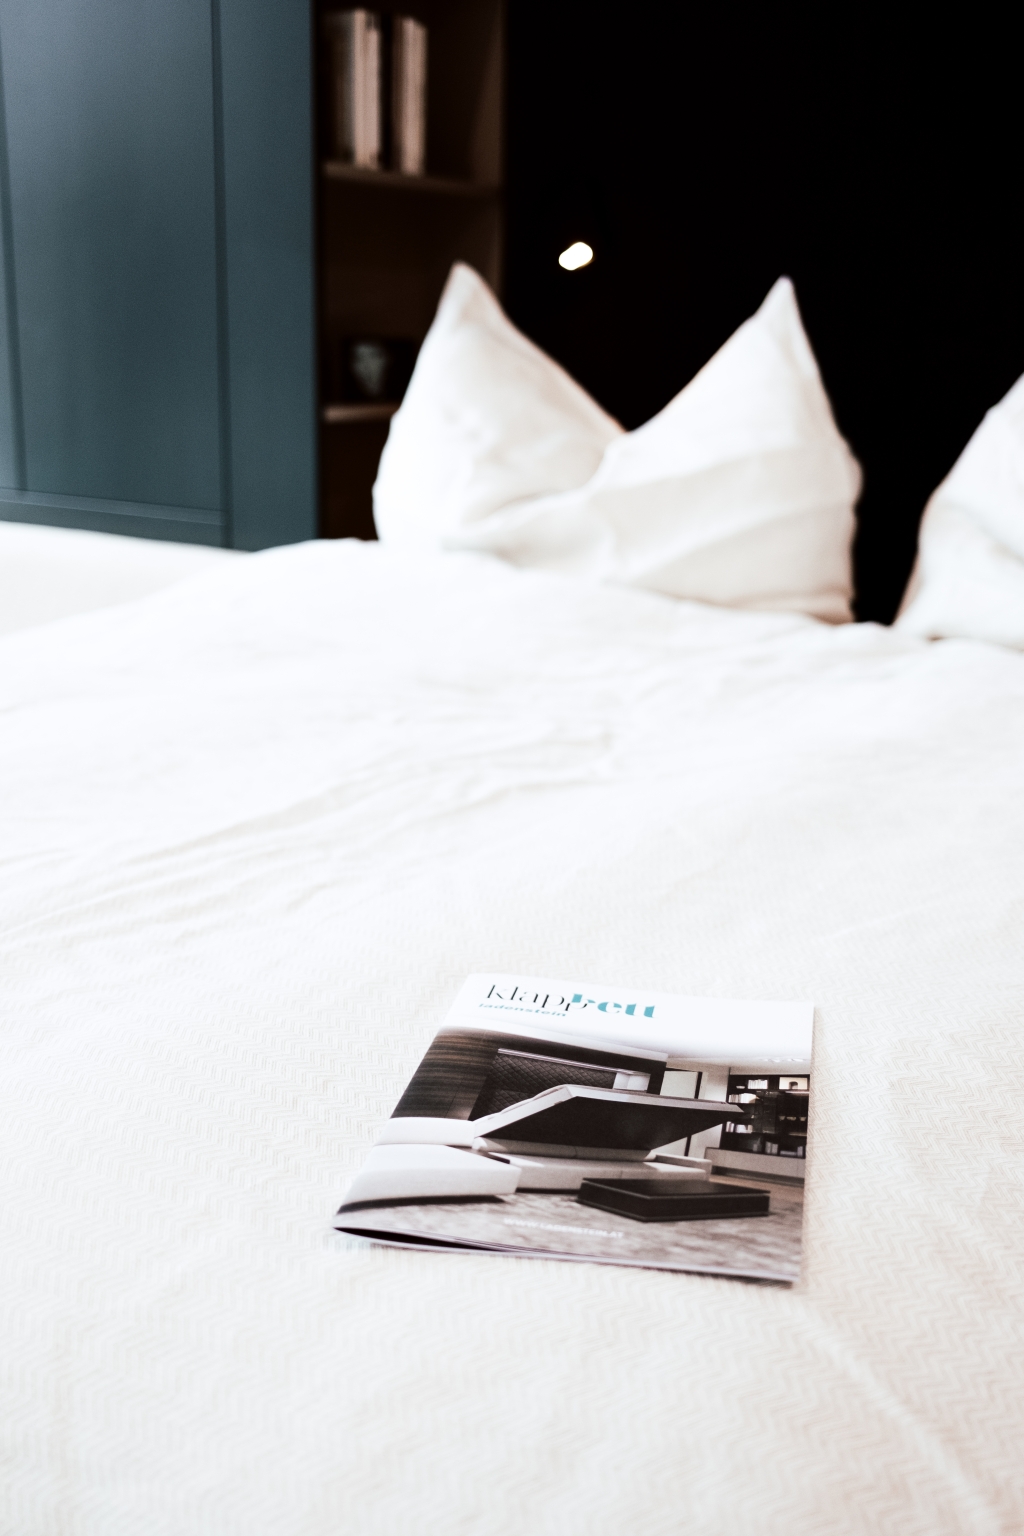 Ein einladend gemachtes Bett mit frischer weißer Bettwäsche und flauschigen Kissen sowie eine in der Mitte ausgelegte Zeitschrift laden zu einer entspannten Lektüre in einer ruhigen Schlafzimmerumgebung ein.